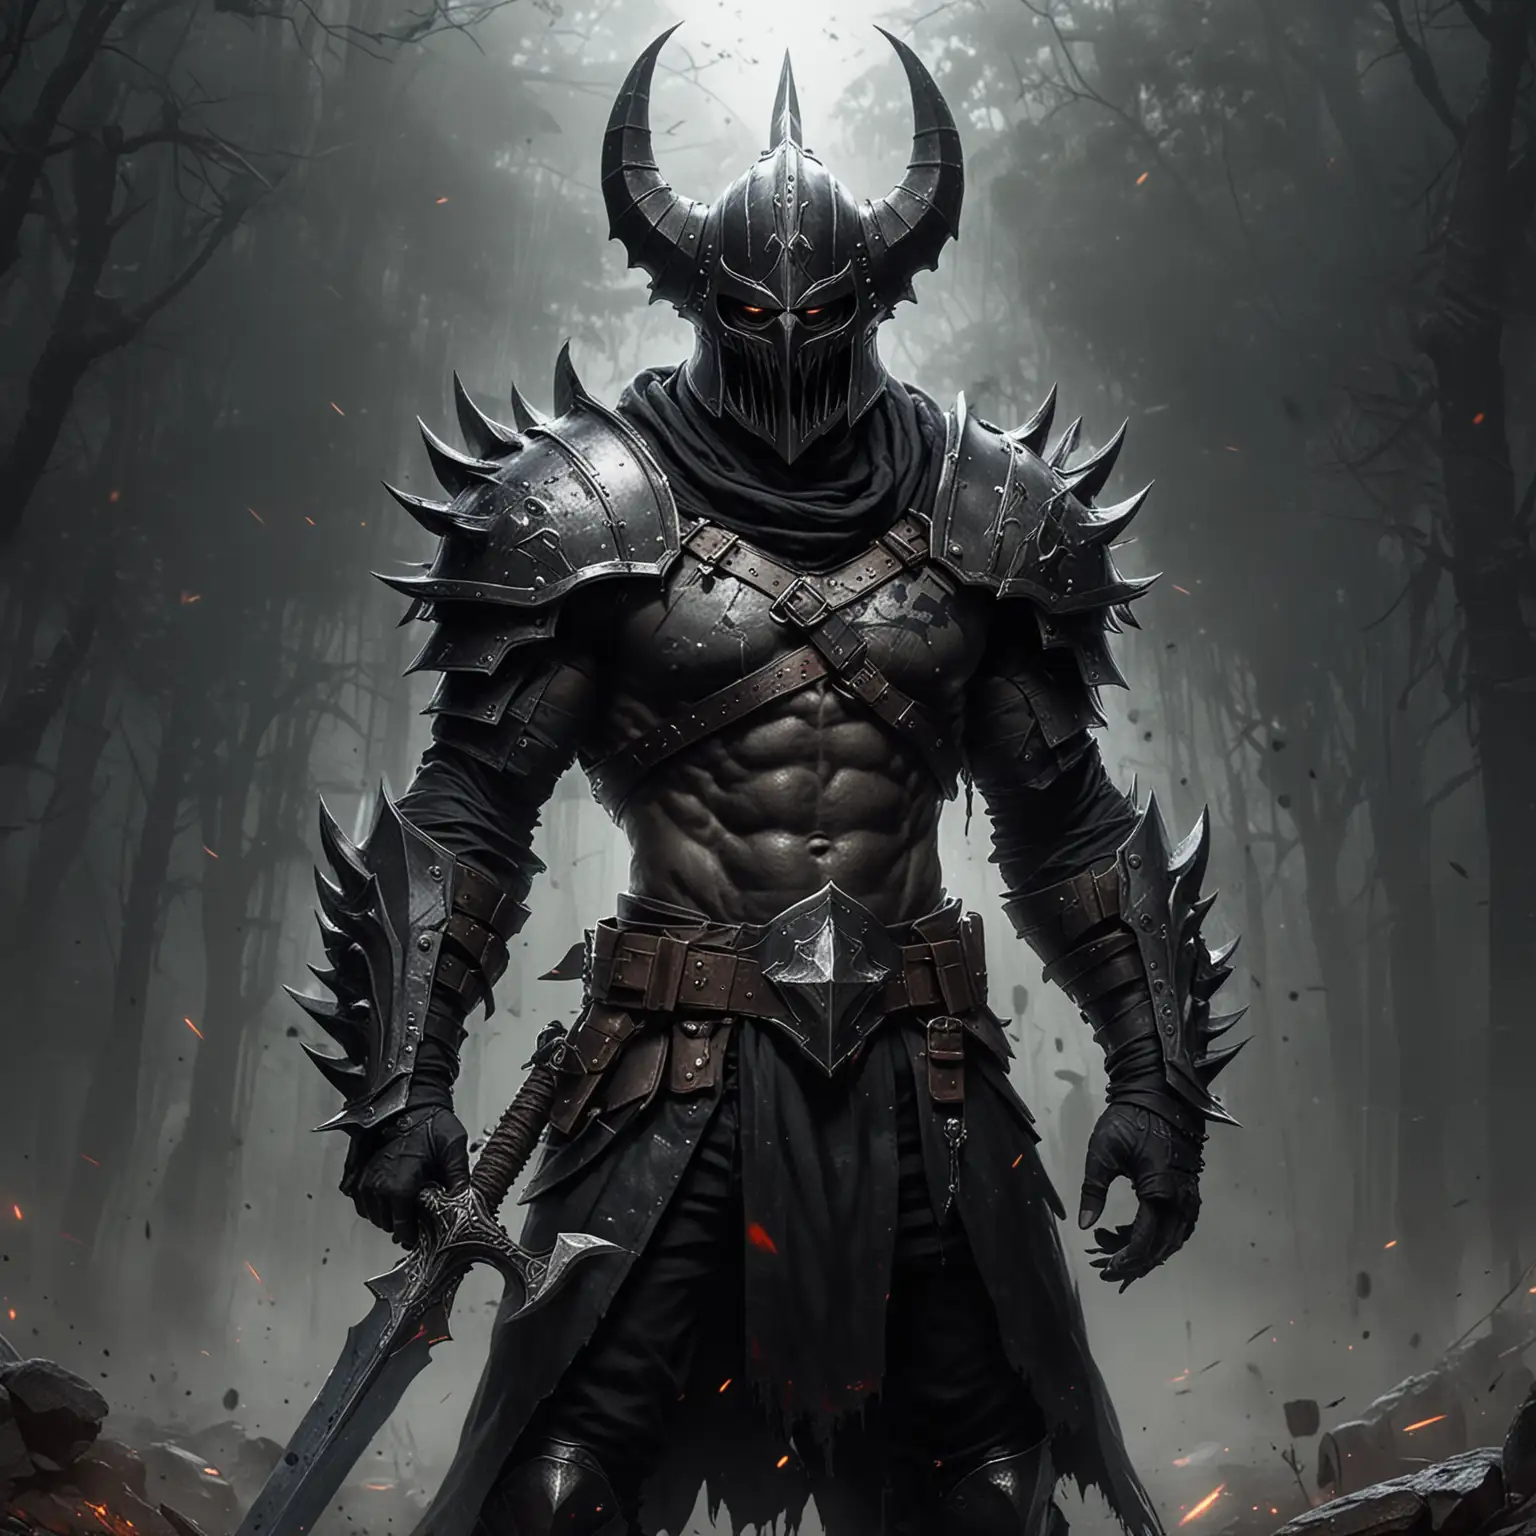 big claws, strong torso, big, pointy, teeth, gothic helmet, battleground, big sword, big shield